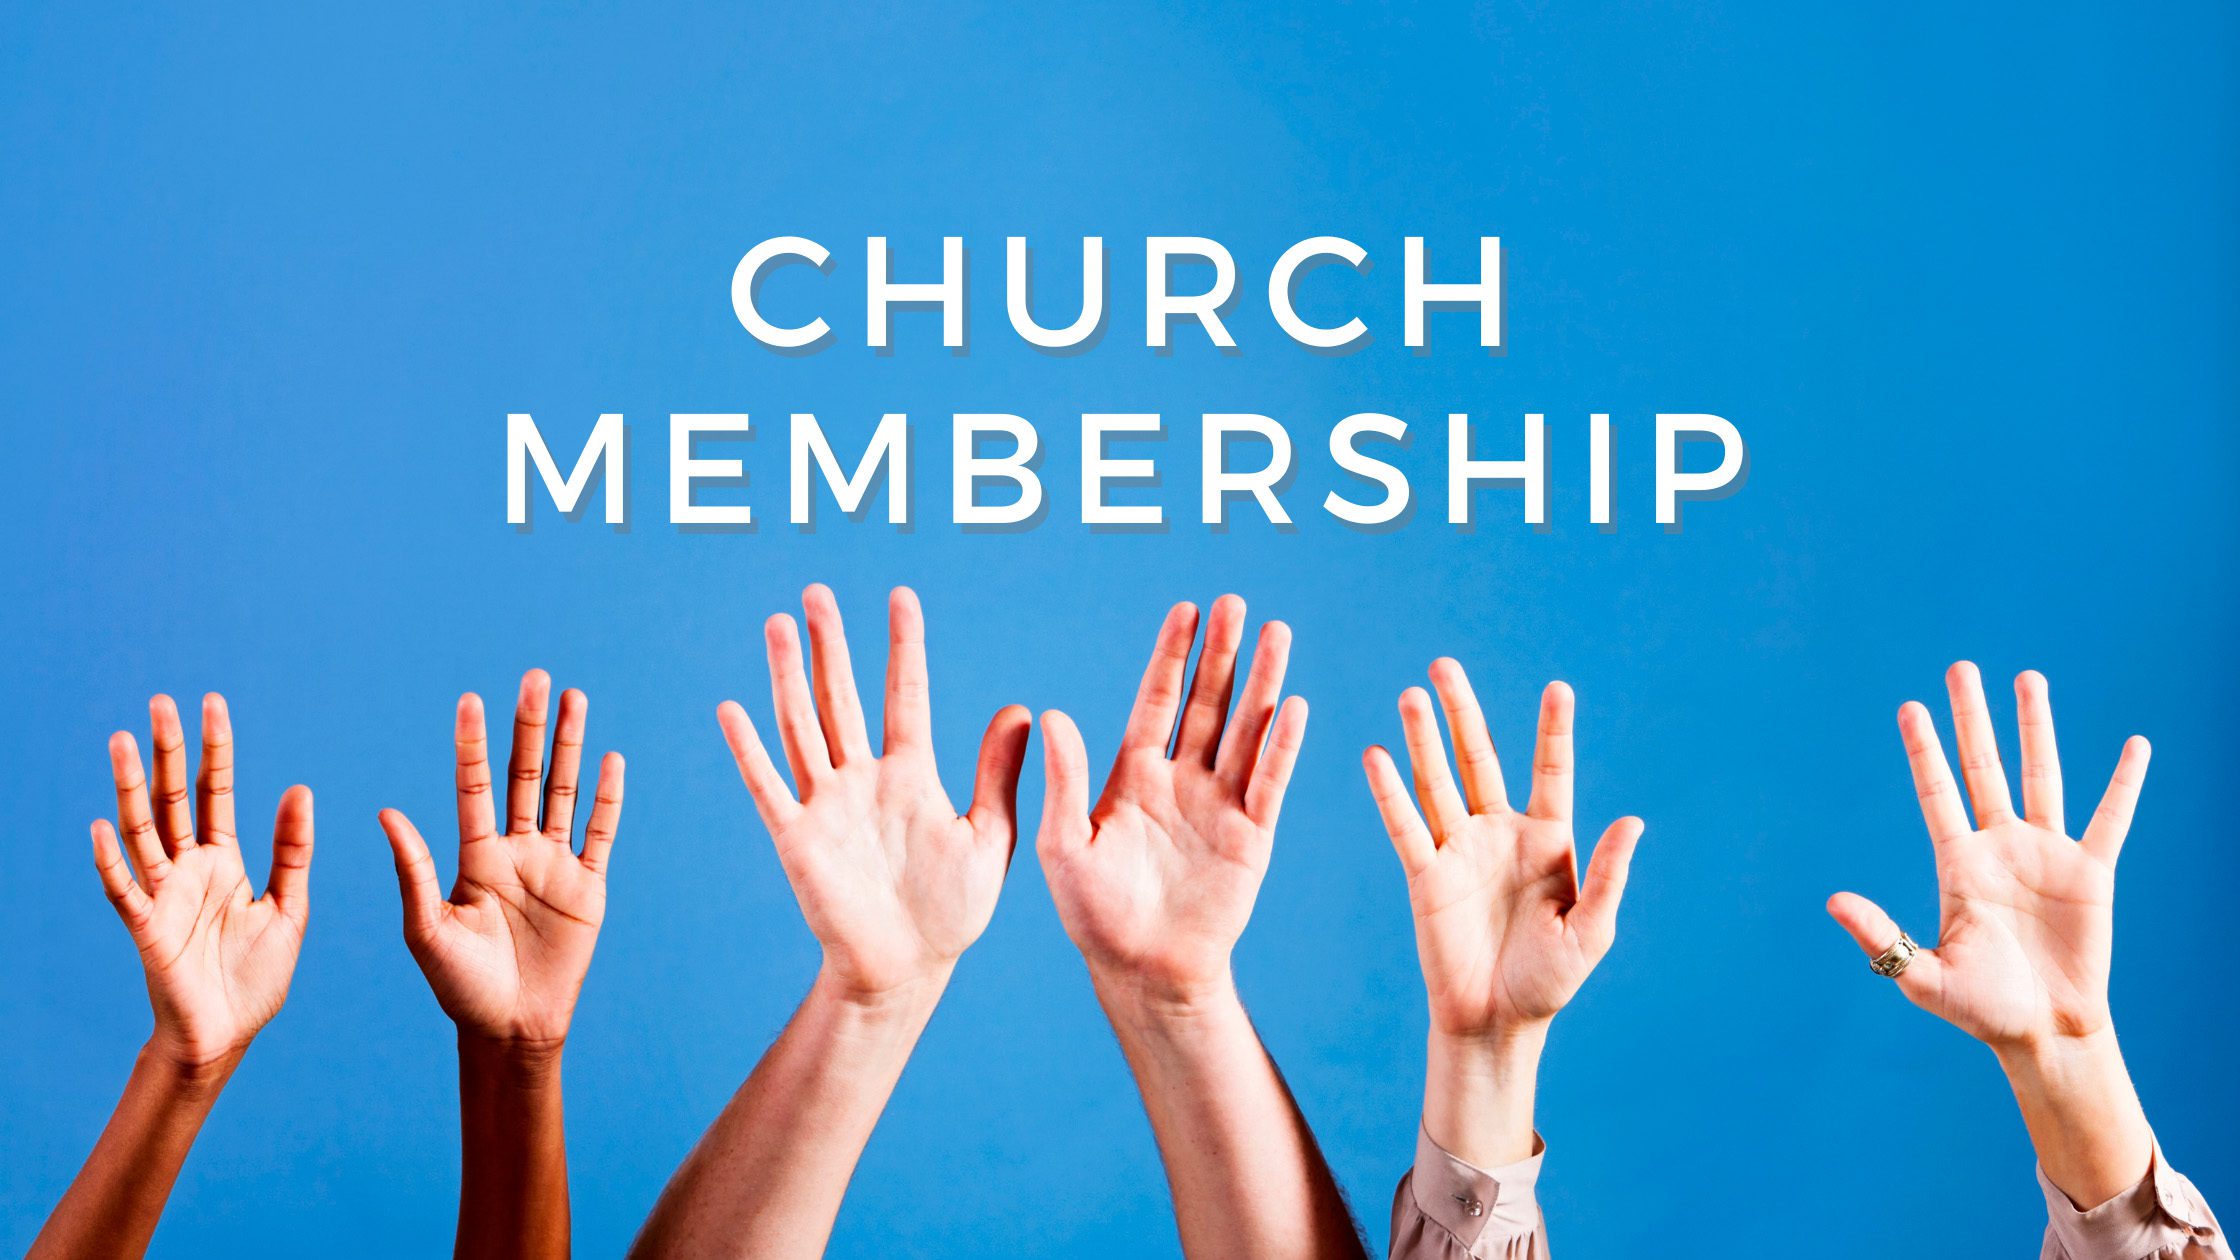 church membership